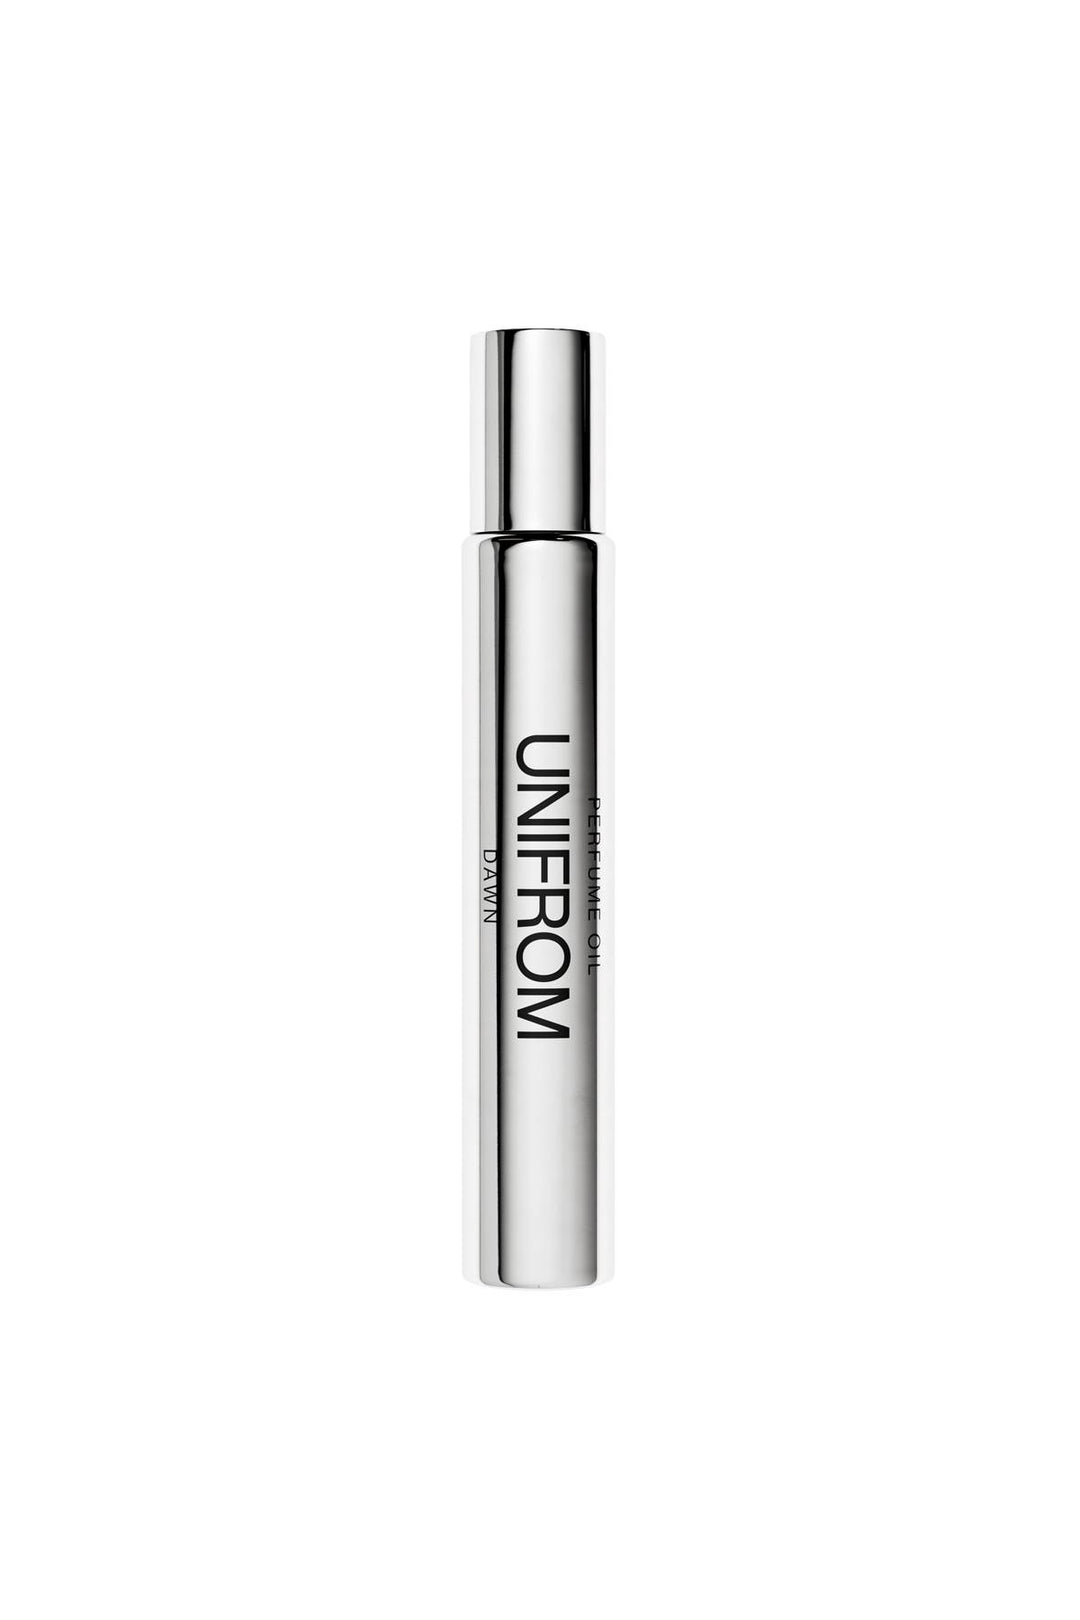 Unifrom perfume oil dawn - 10ml-0